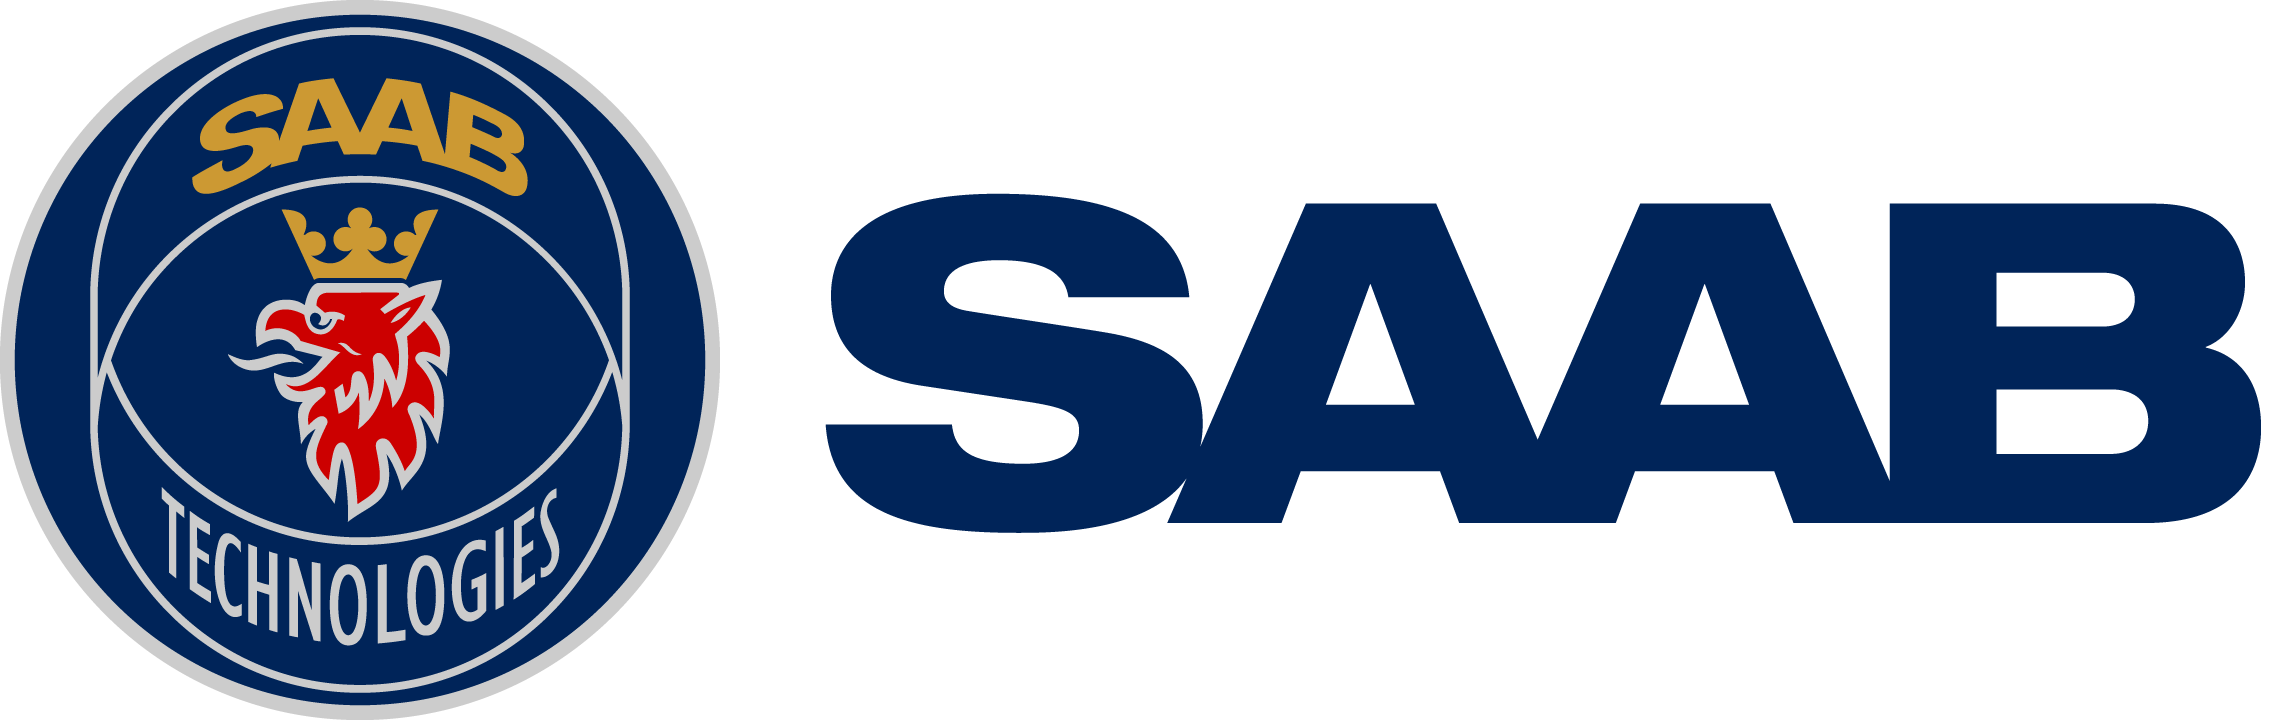 Saab-logo.png